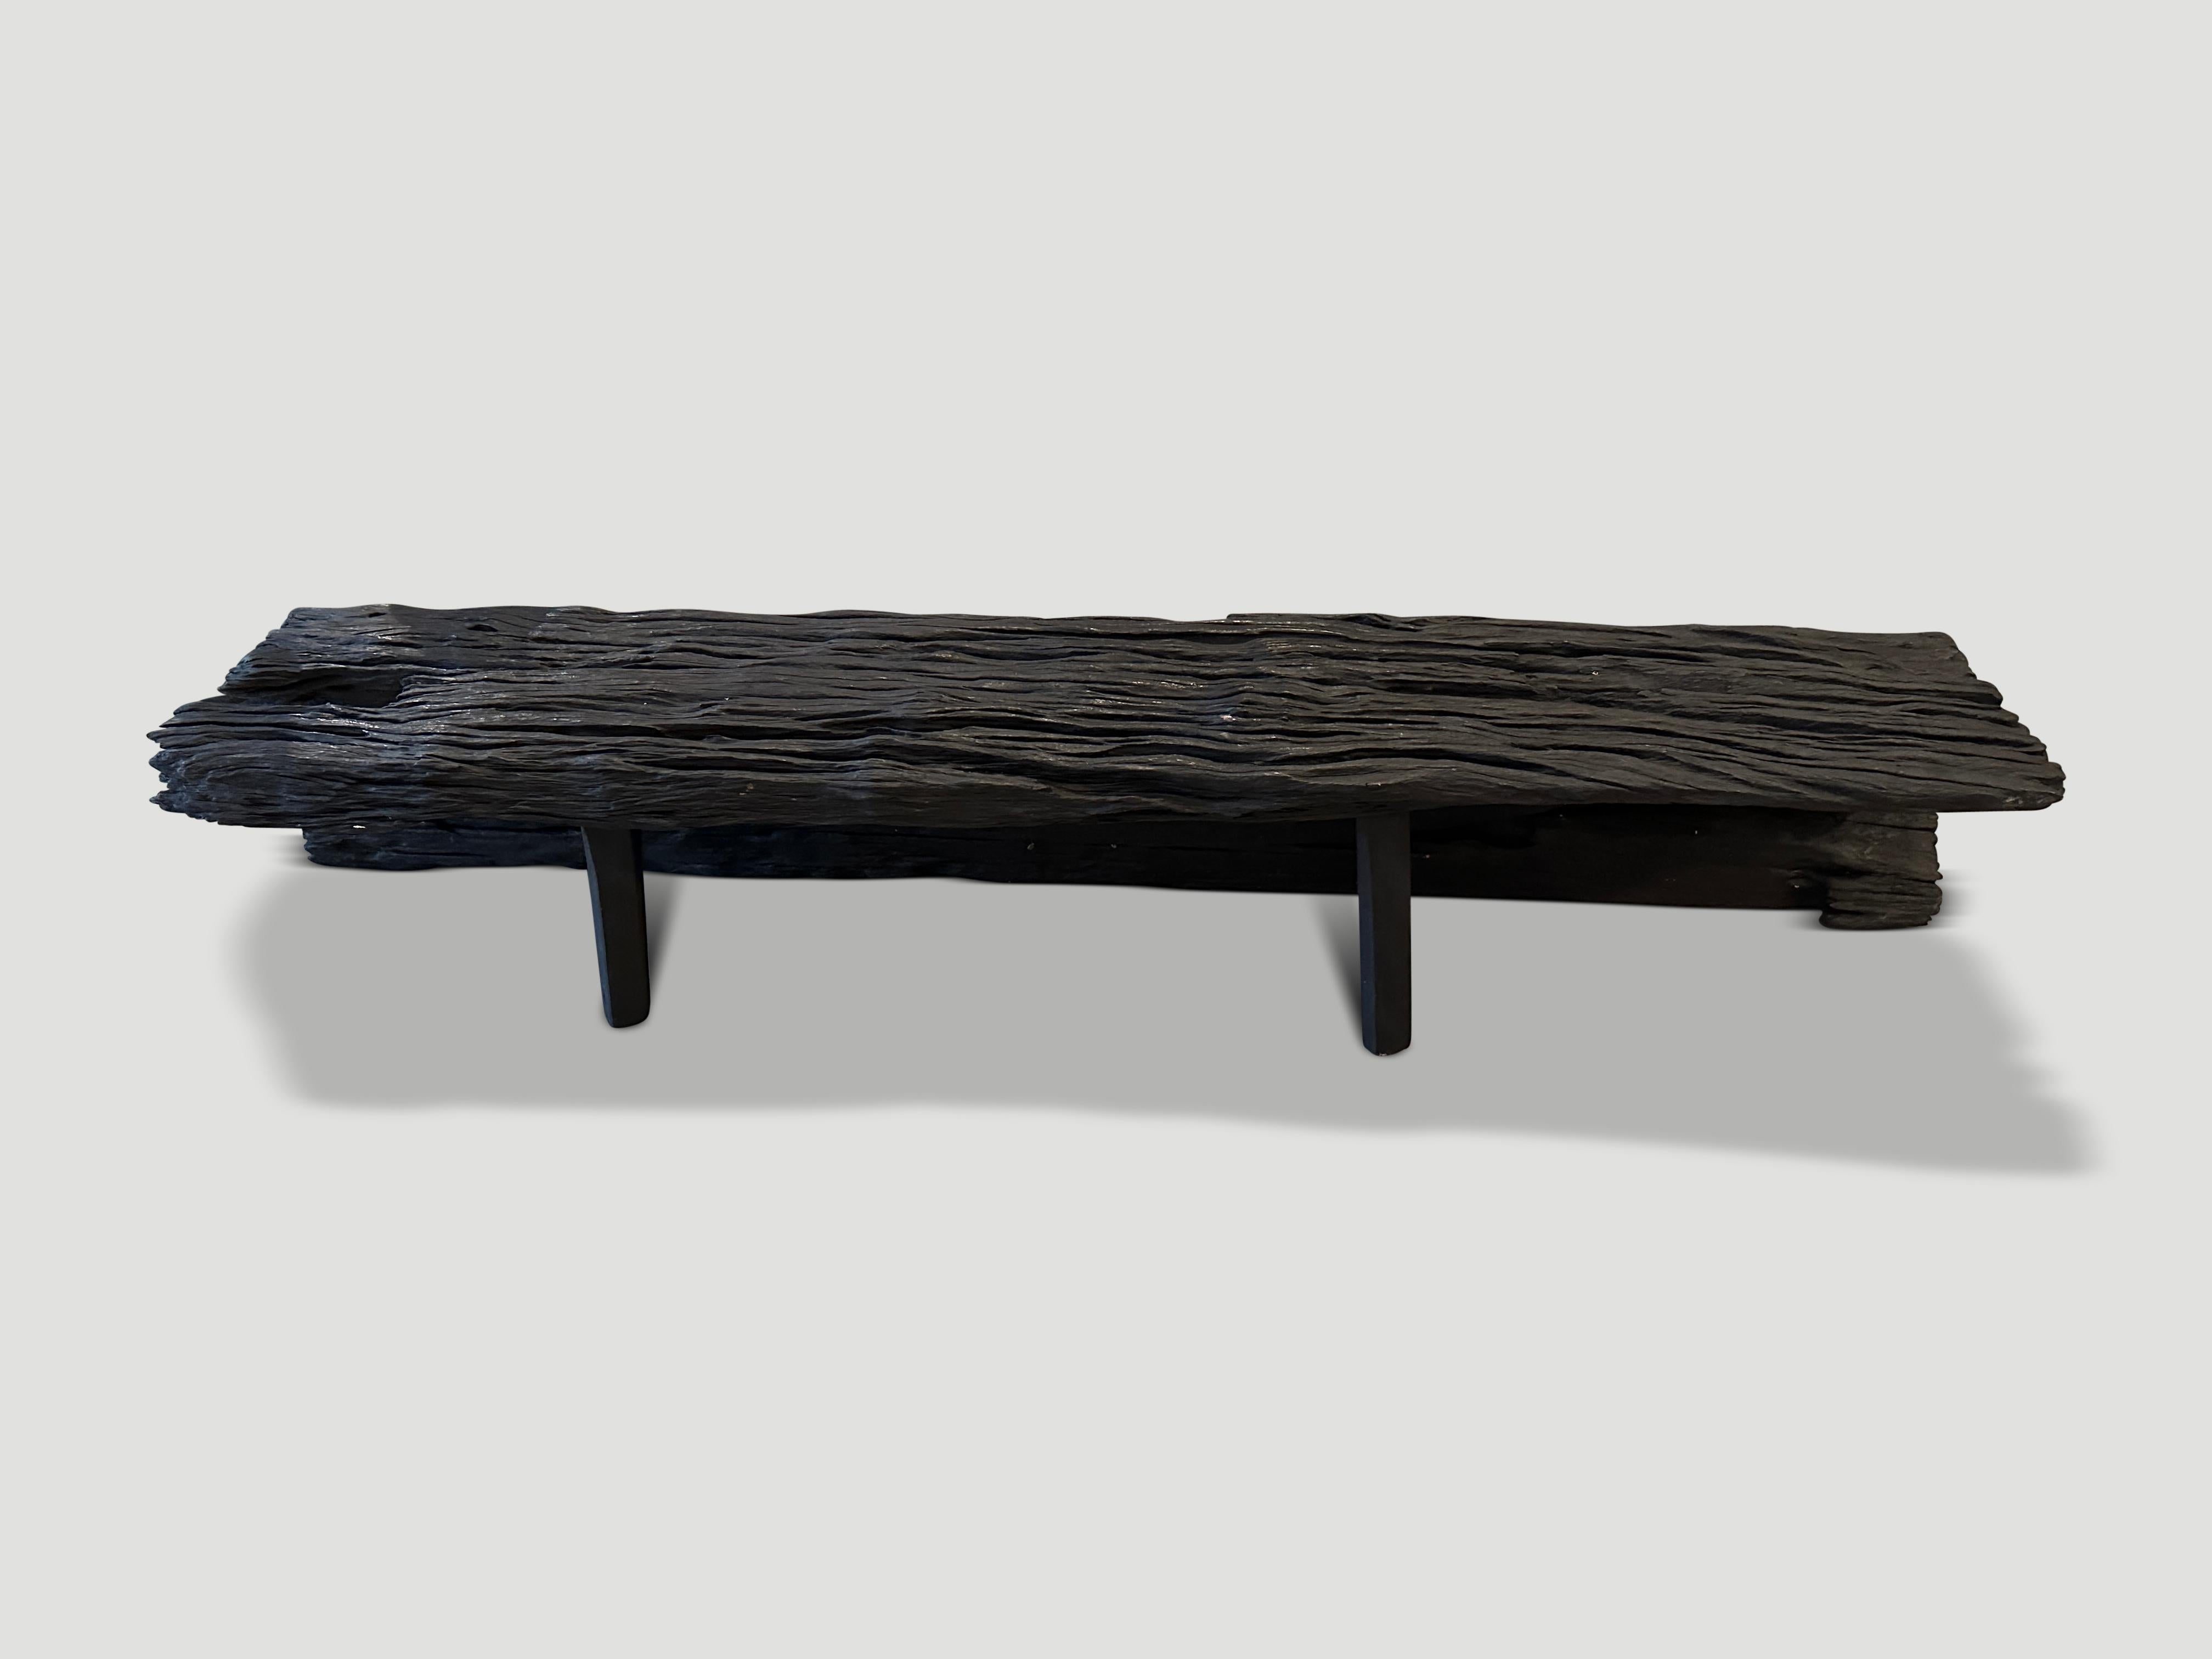 Schöne lange Bank aus Eisenholz, sowohl skulptural als auch funktional. Gekohlt, geschliffen und versiegelt, um die erstaunlichen Details dieses jahrhundertealten Holzes zu enthüllen. Einzigartiges Stück aus einem einzigen gebogenen Abschnitt. Wir